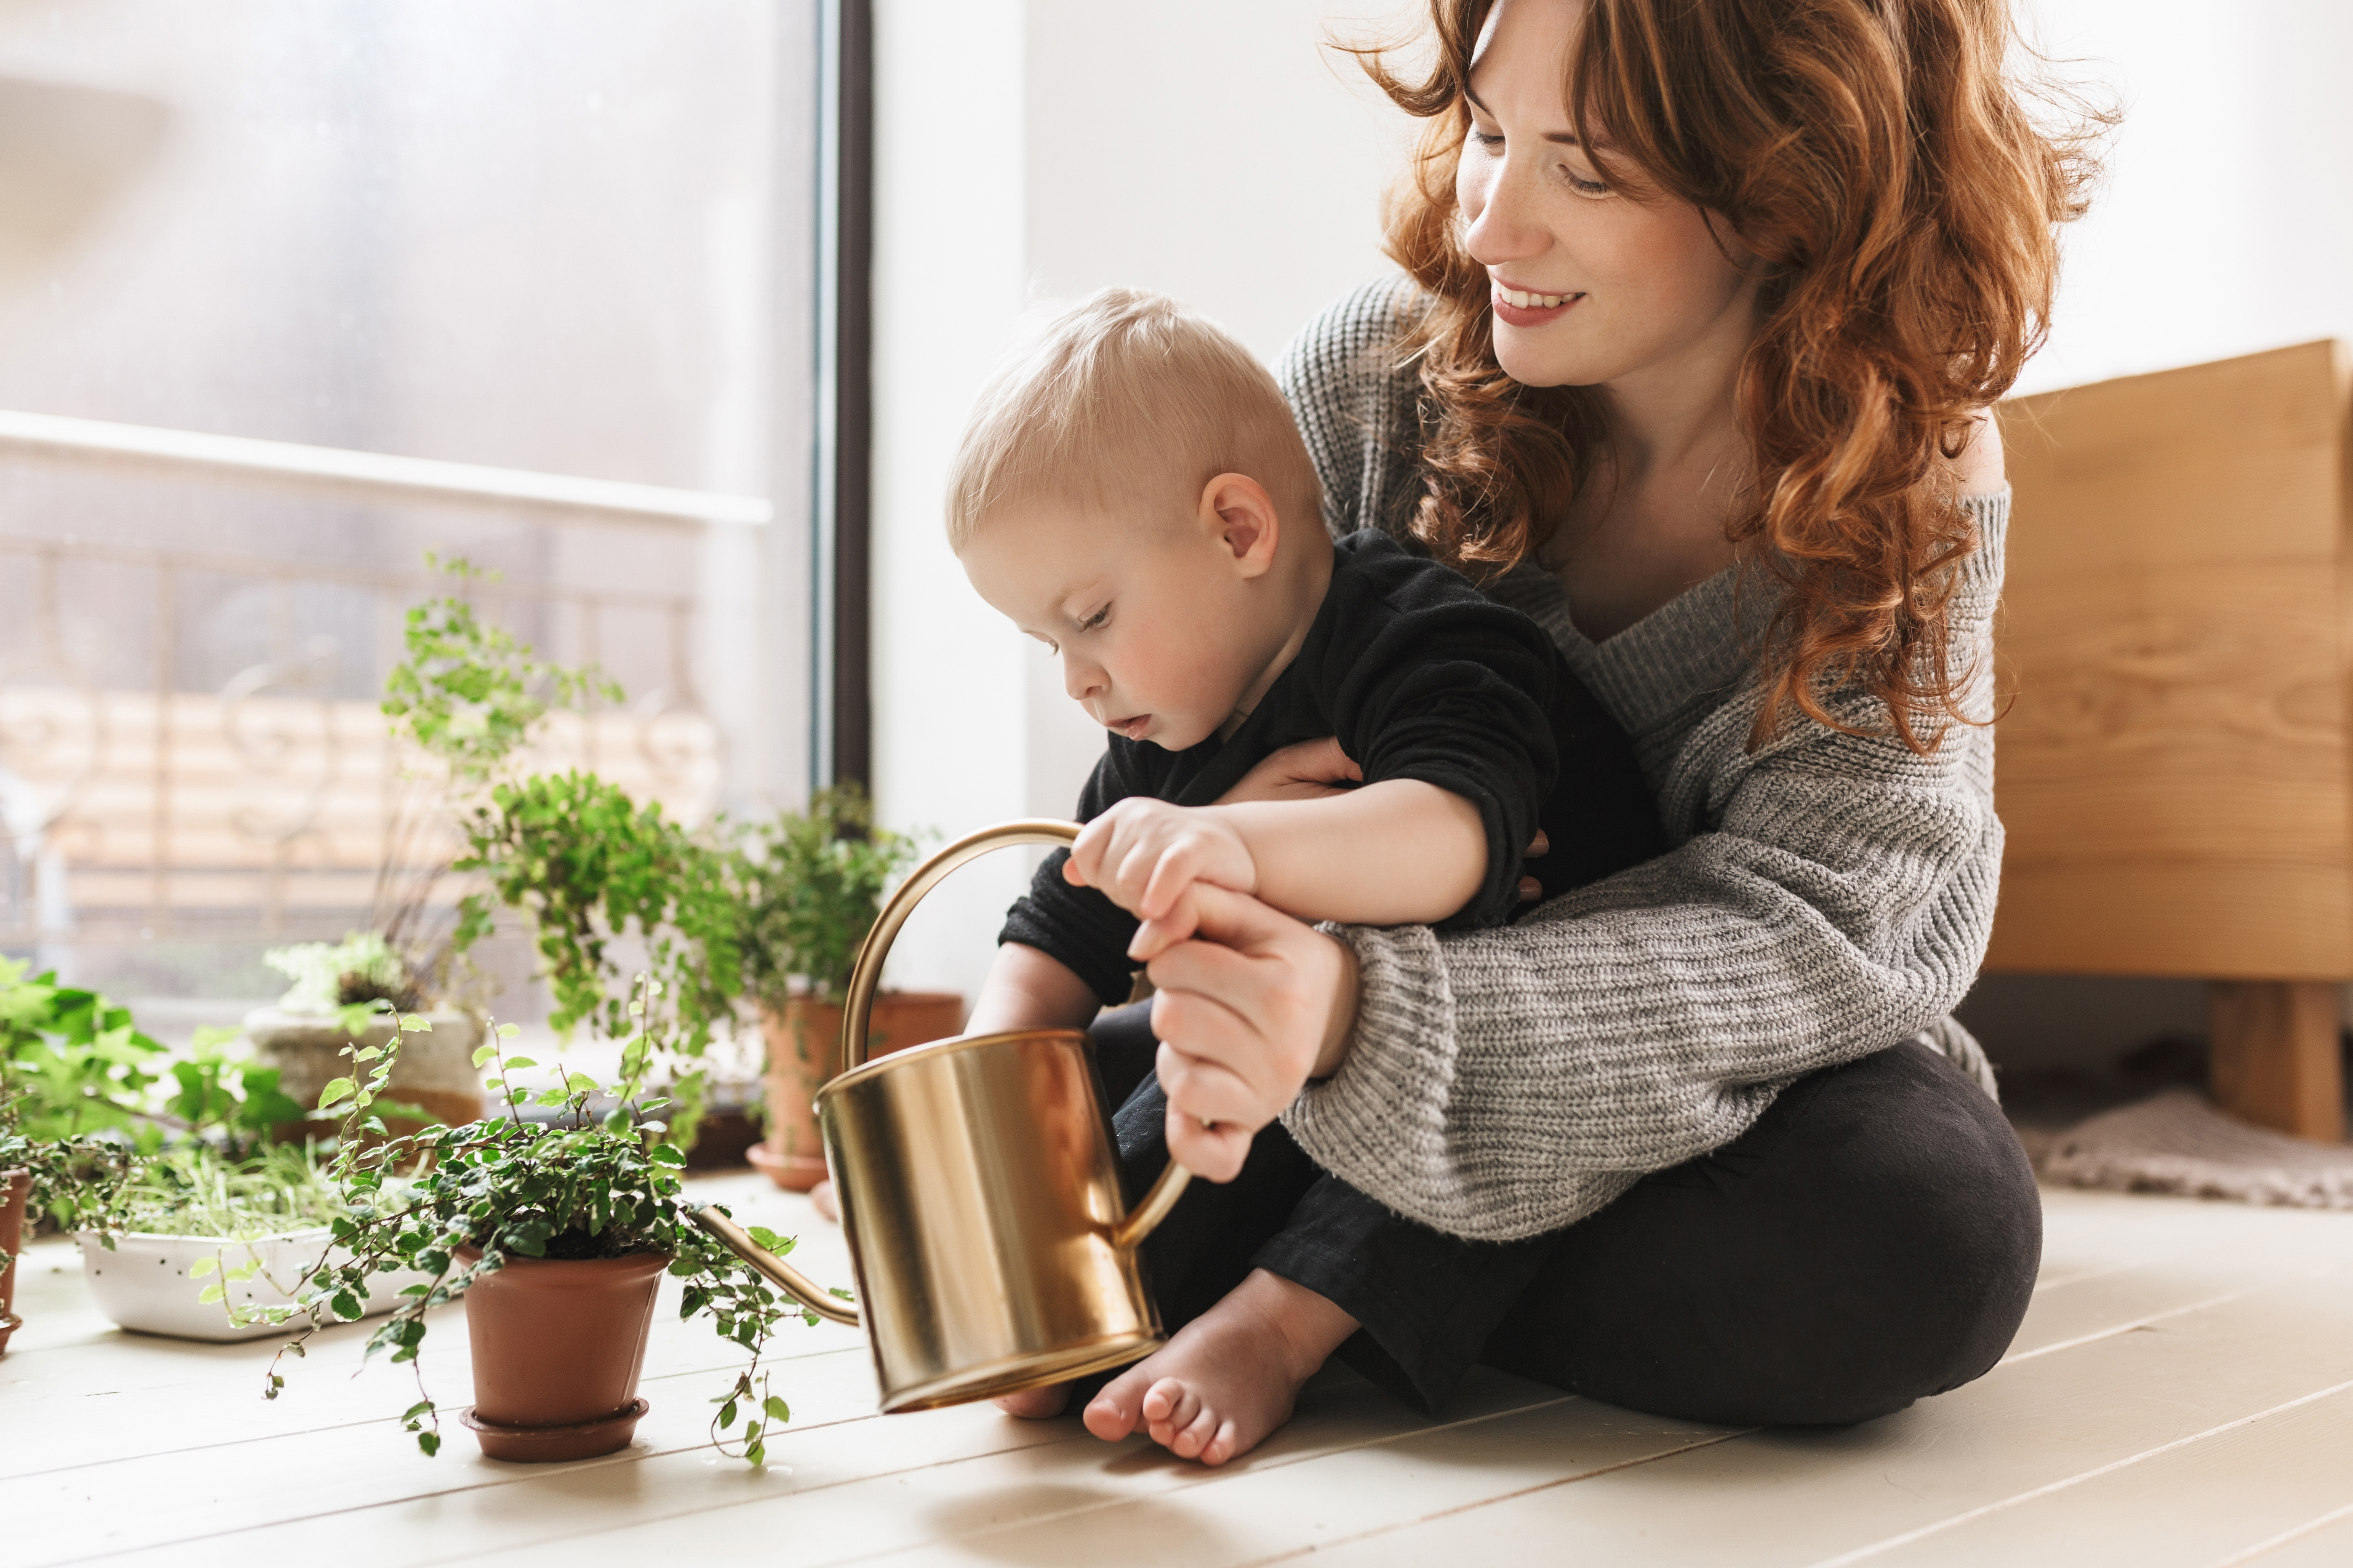 Une femme apprend à son bébé comment arroser les plantes | Source : Shutterstock